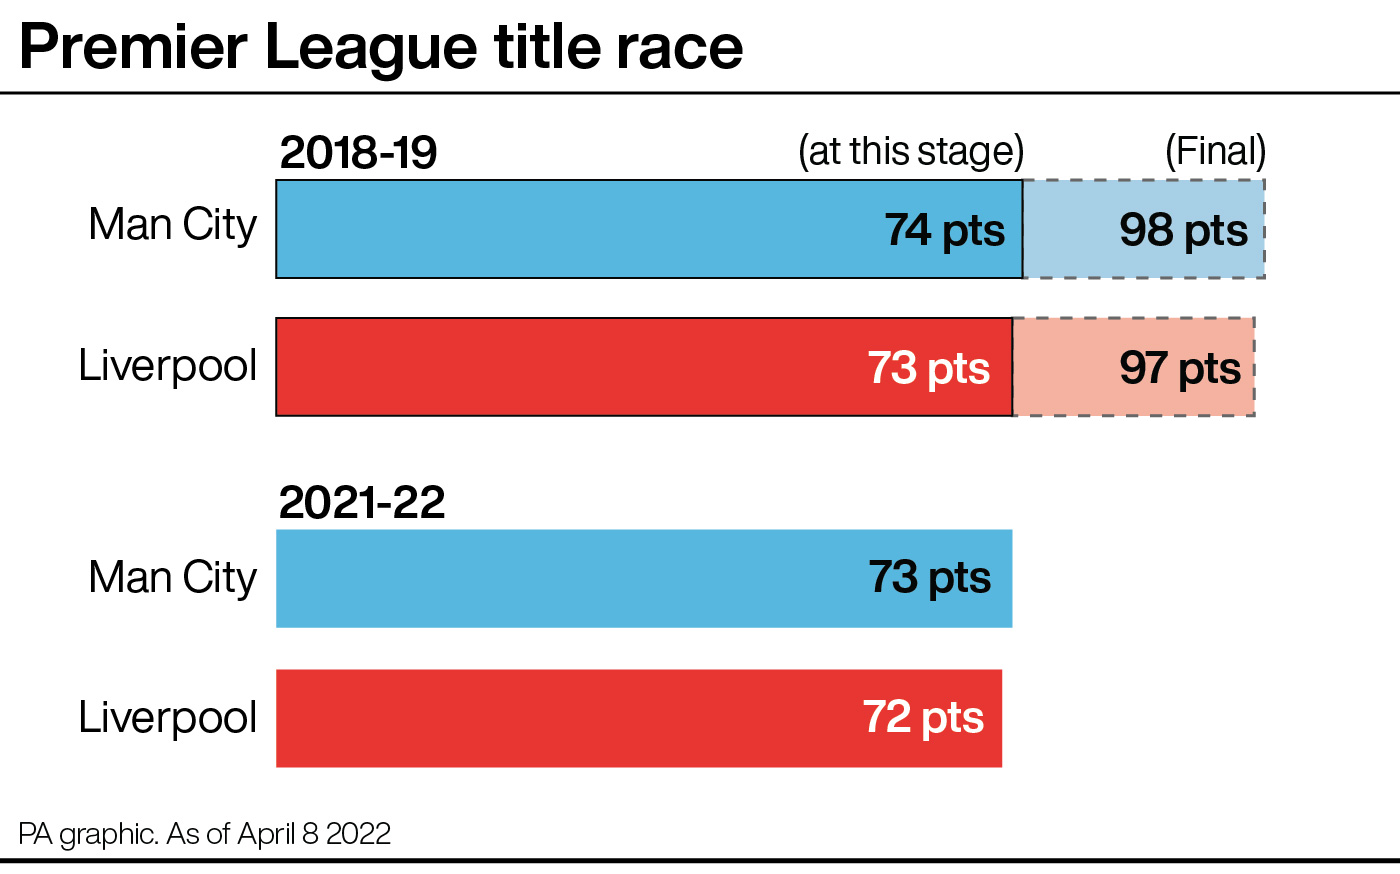 Premier League title race, 2018-19 and 2021-22